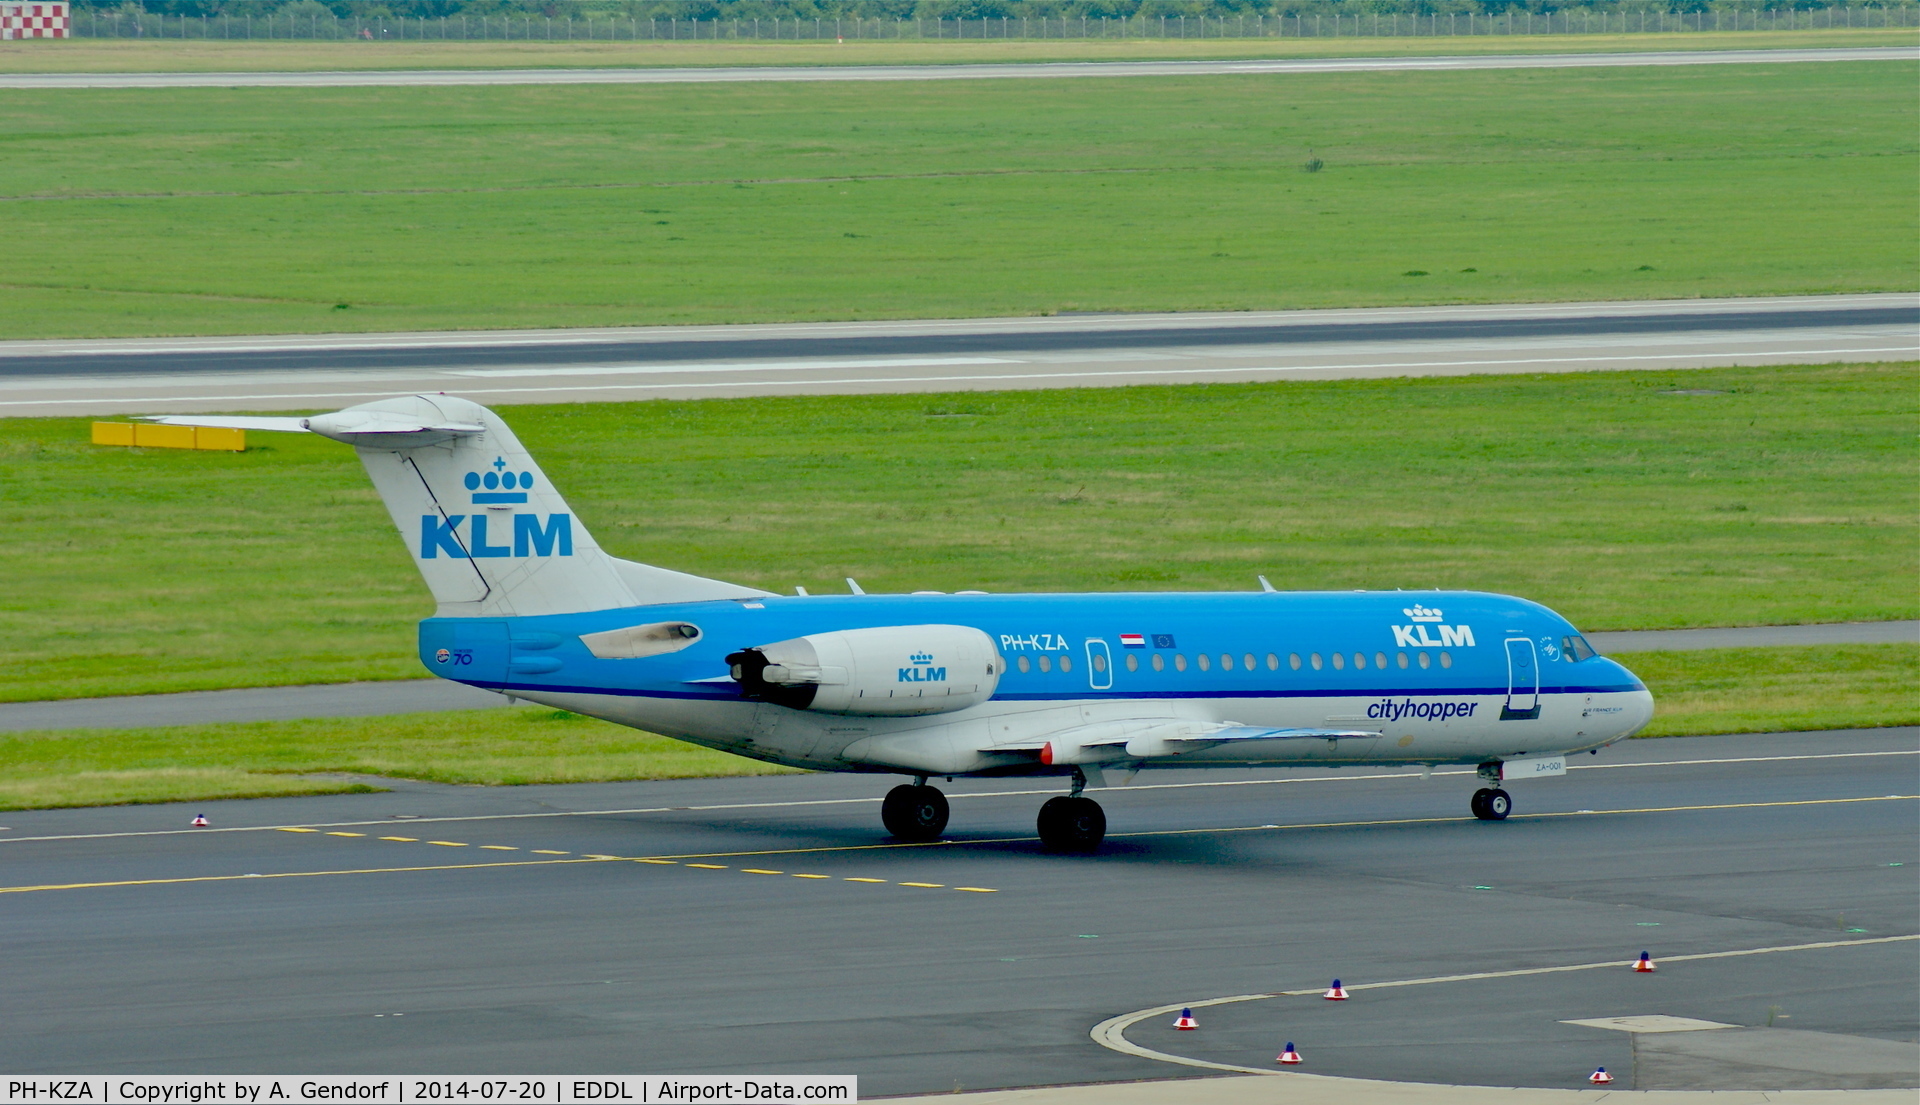 PH-KZA, 1996 Fokker 70 (F-28-070) C/N 11567, KLM Cityhopper, is here taxiing to RWY 23L at Düsseldorf Int'l(EDDL)